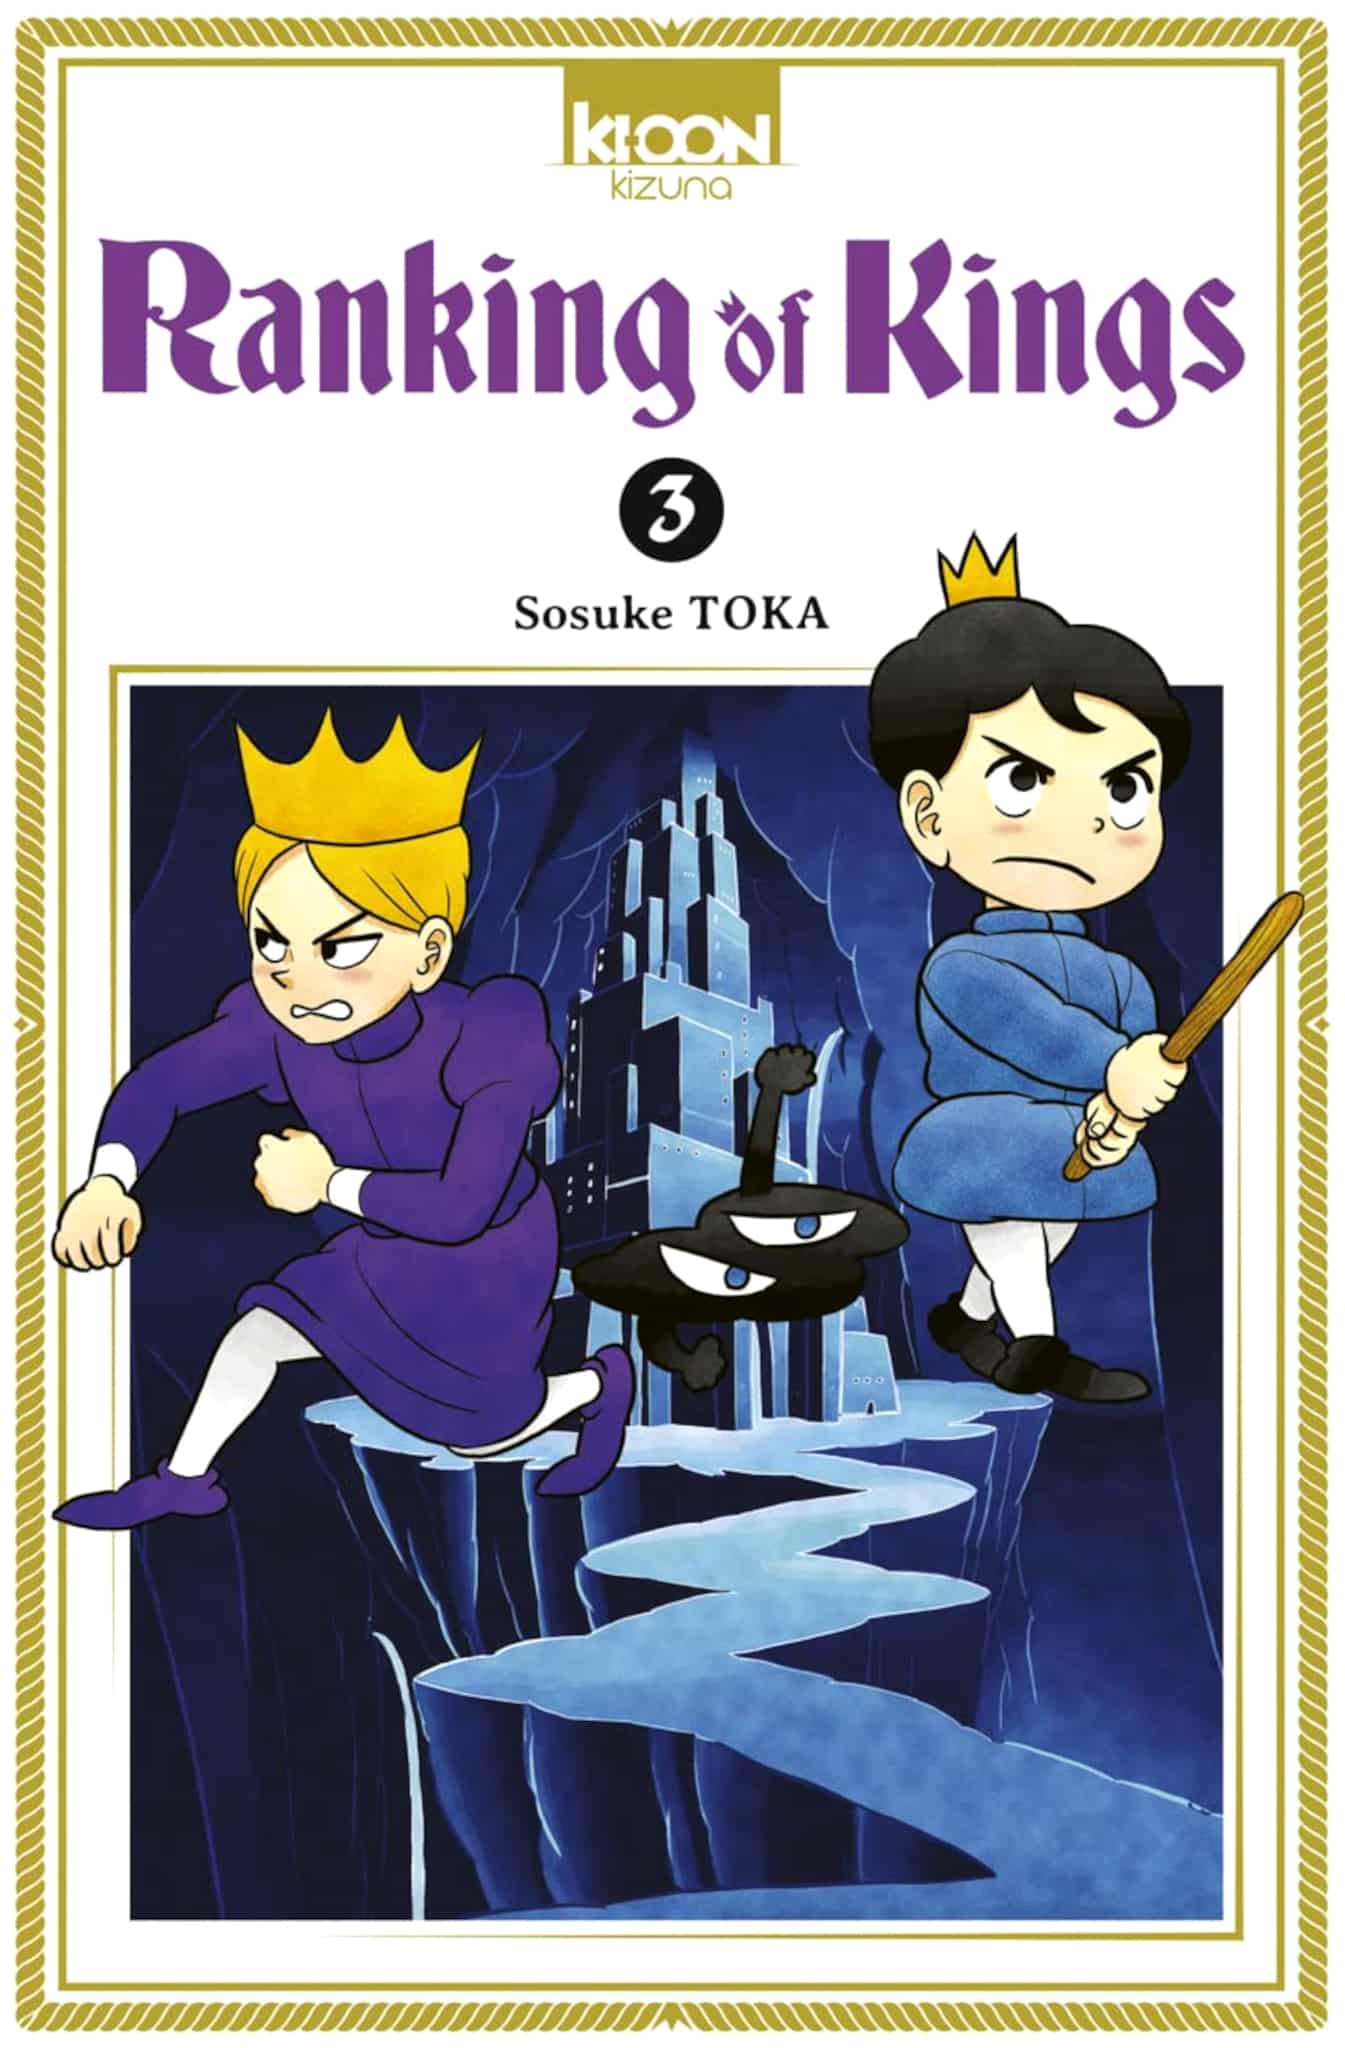 Tome 3 du manga Ranking of Kings